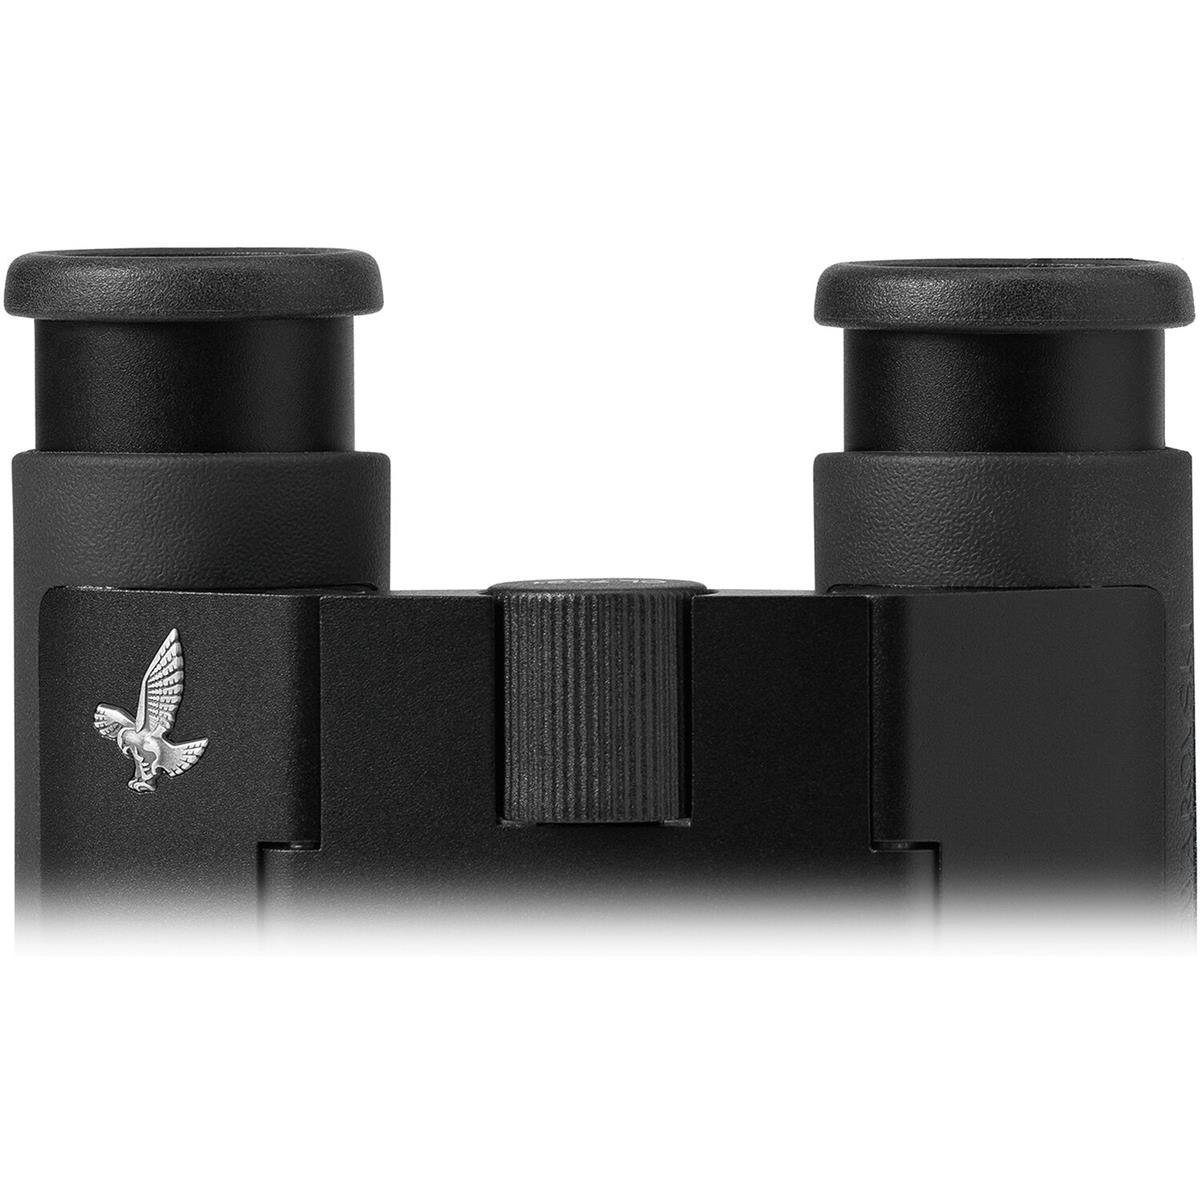 Image of Swarovski Optik Eyecup for CL Curio Binoculars